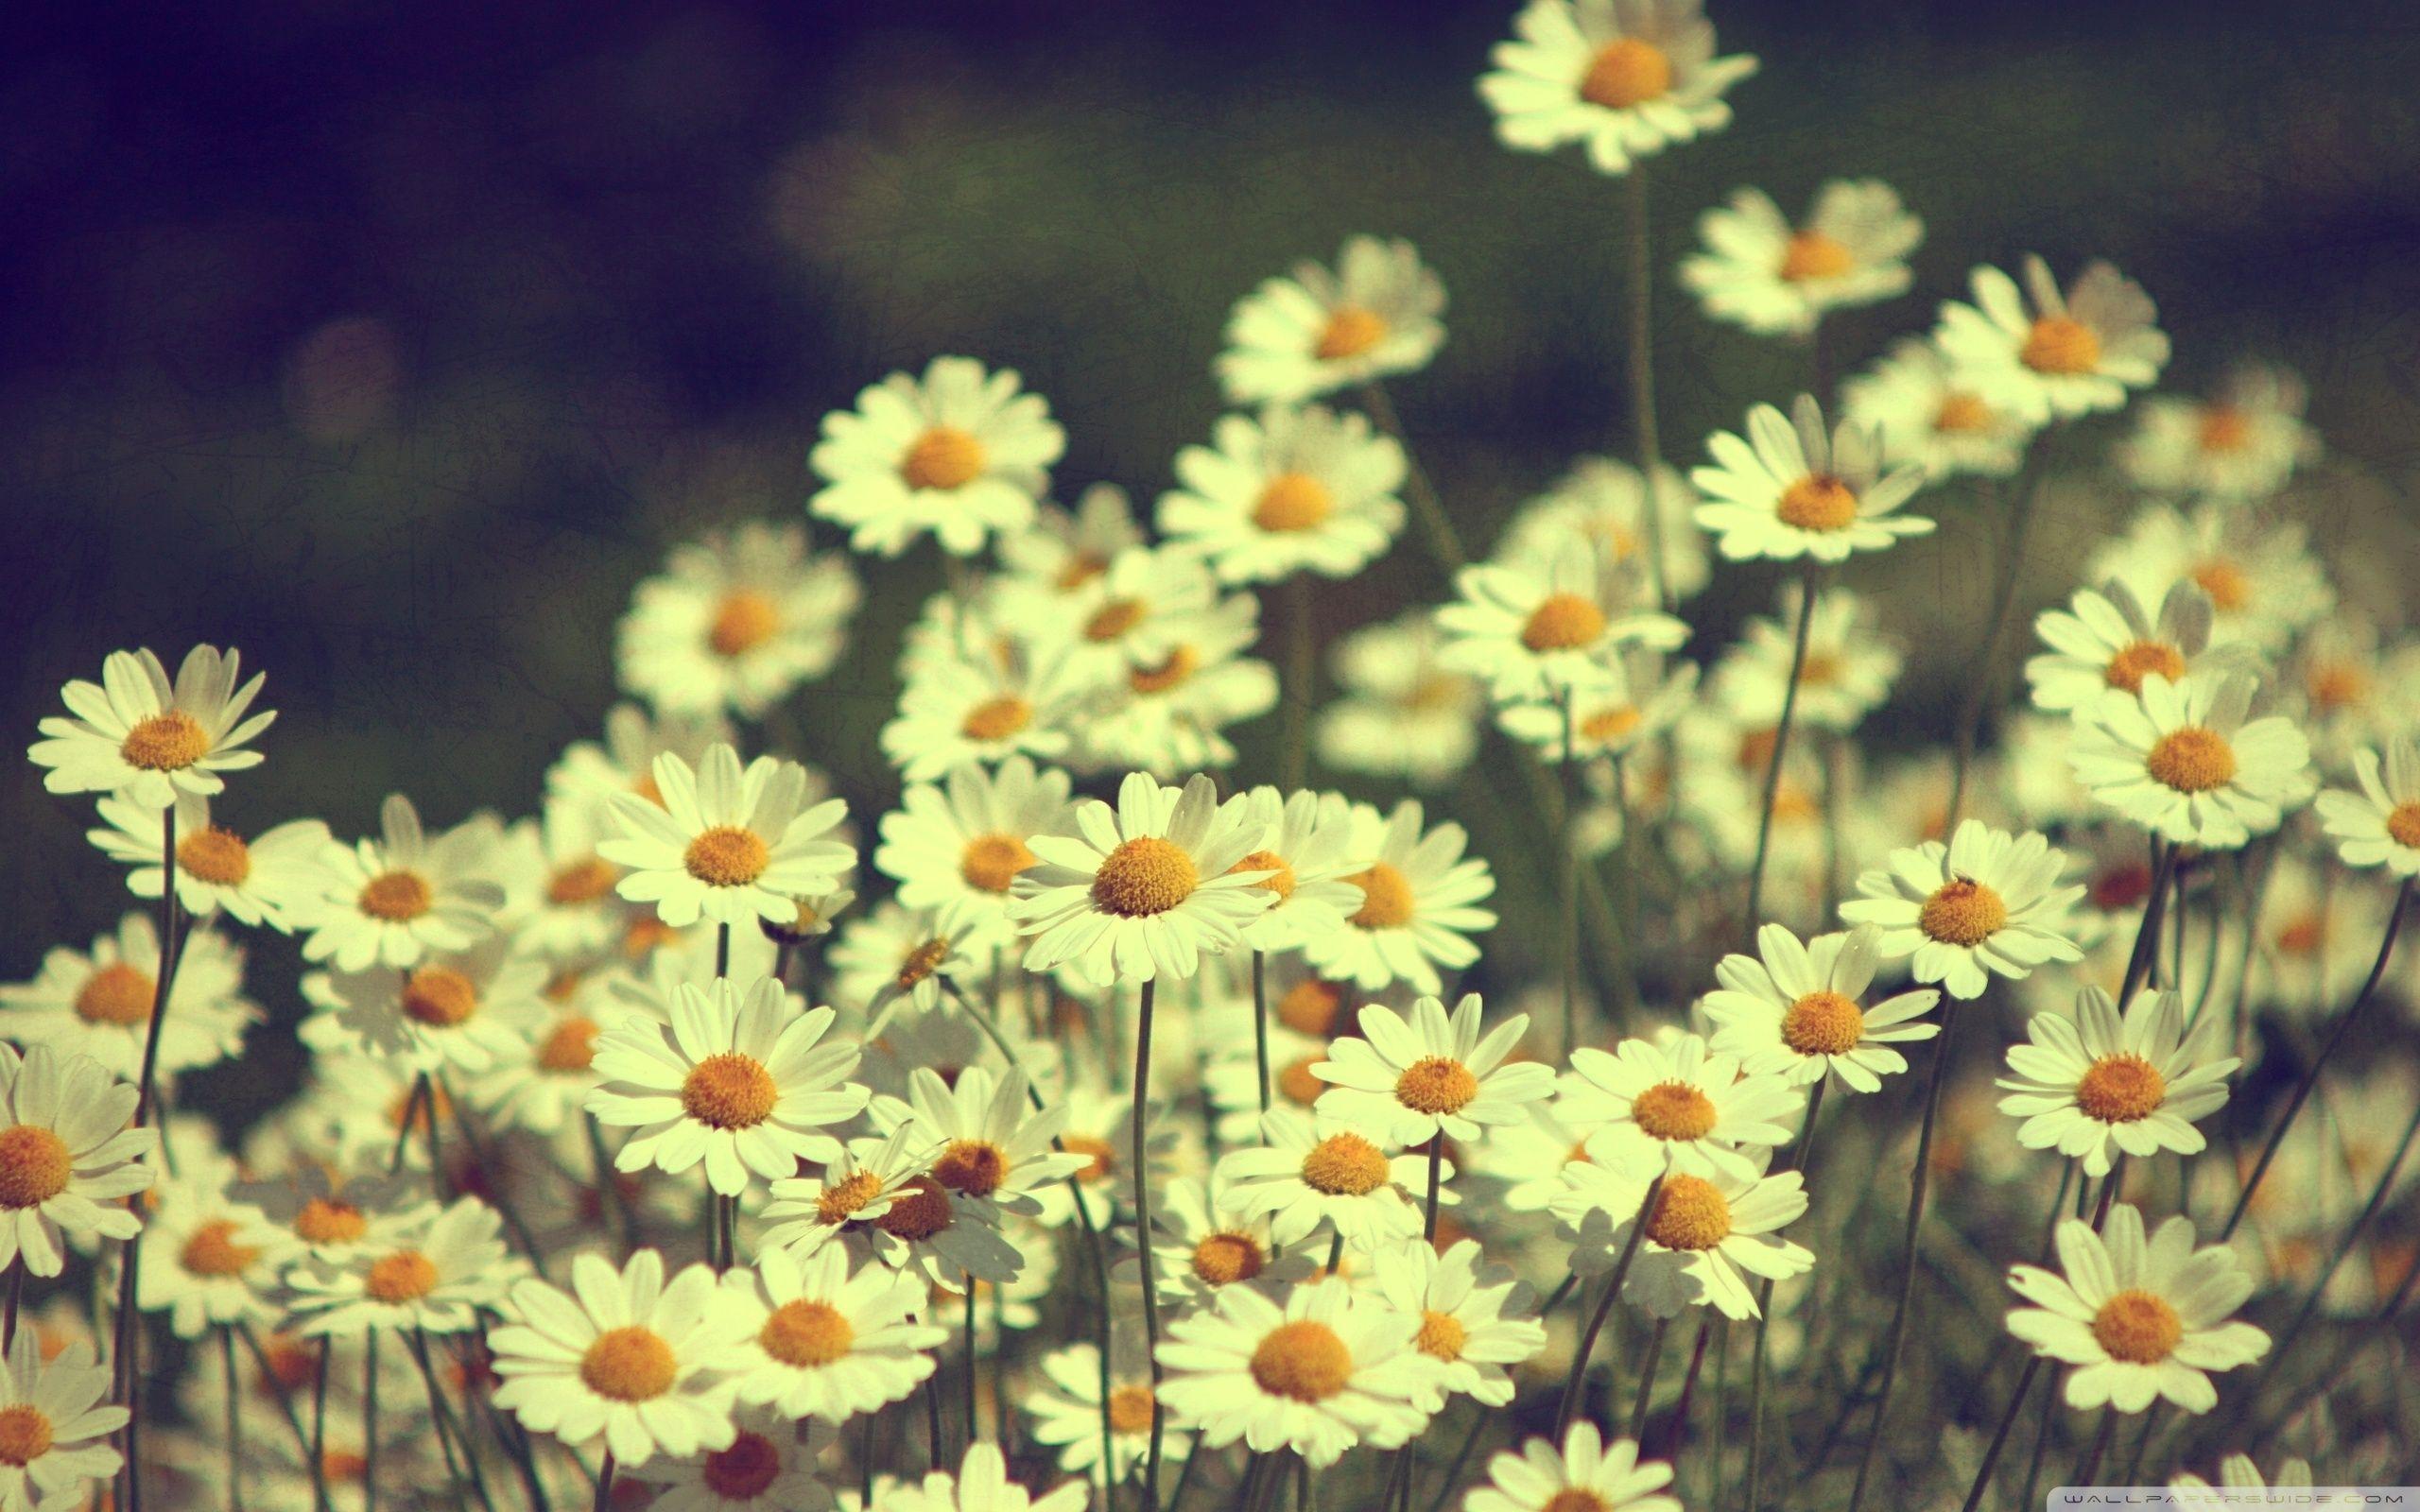 Hoa cúc Hoa cúc là biểu tượng của sự thanh lịch và tinh khiết. Với màu sắc trắng tinh khôi, chúng là điểm nhấn hoàn hảo cho bất kỳ bức ảnh nào. Từ các phong cảnh đẹp, đến các tác phẩm nghệ thuật, hãy xem các hình ảnh của hoa cúc để tận hưởng sự thanh lịch và độc đáo của chúng.